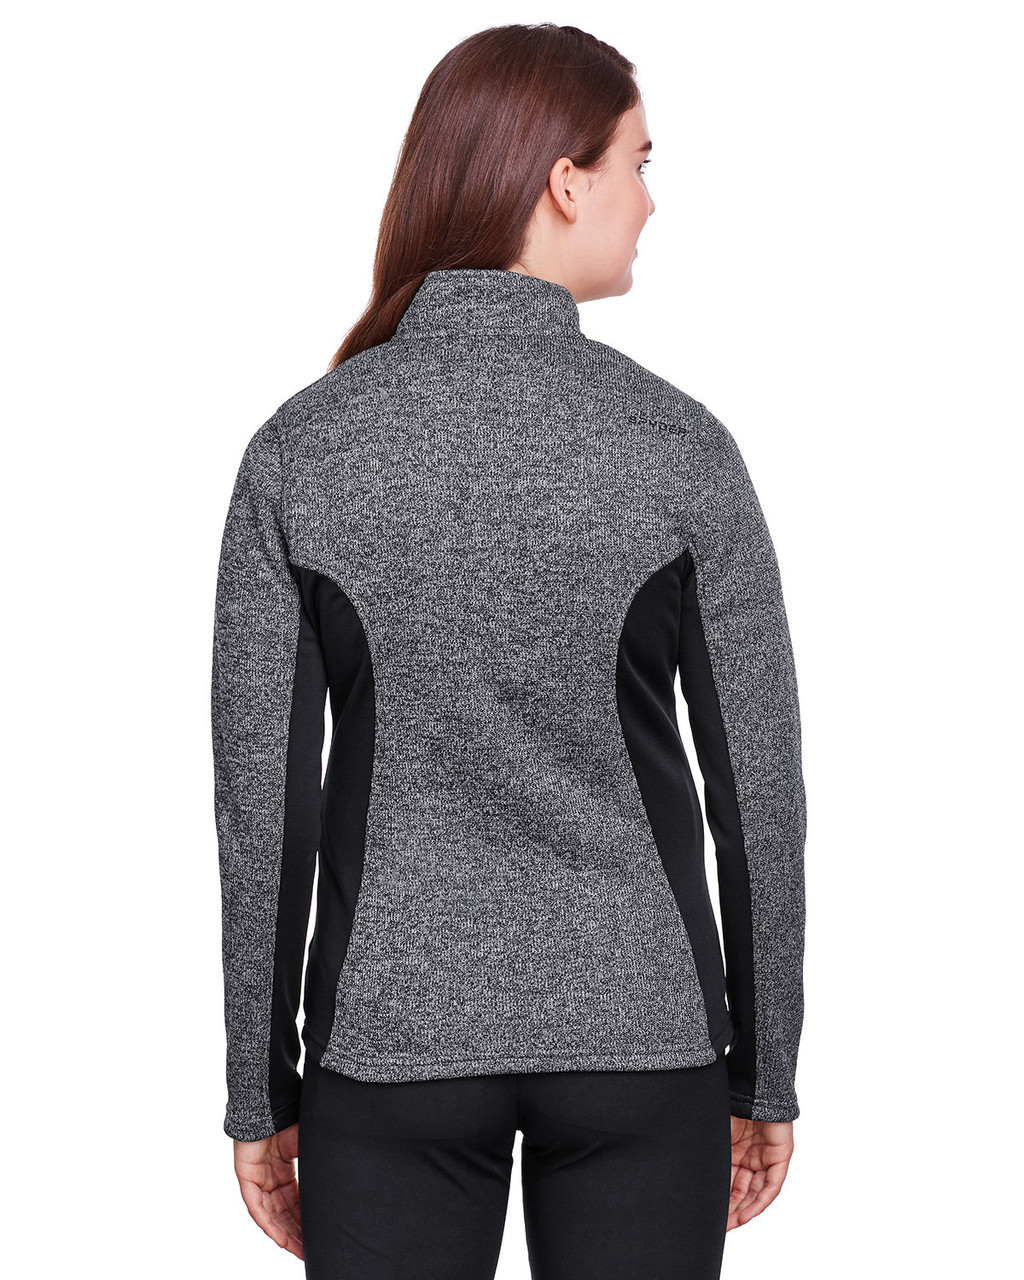 Spyder Ladies' Constant Full-Zip Sweater Fleece Jacket 187335 BLACK HTHR/ BLK Back